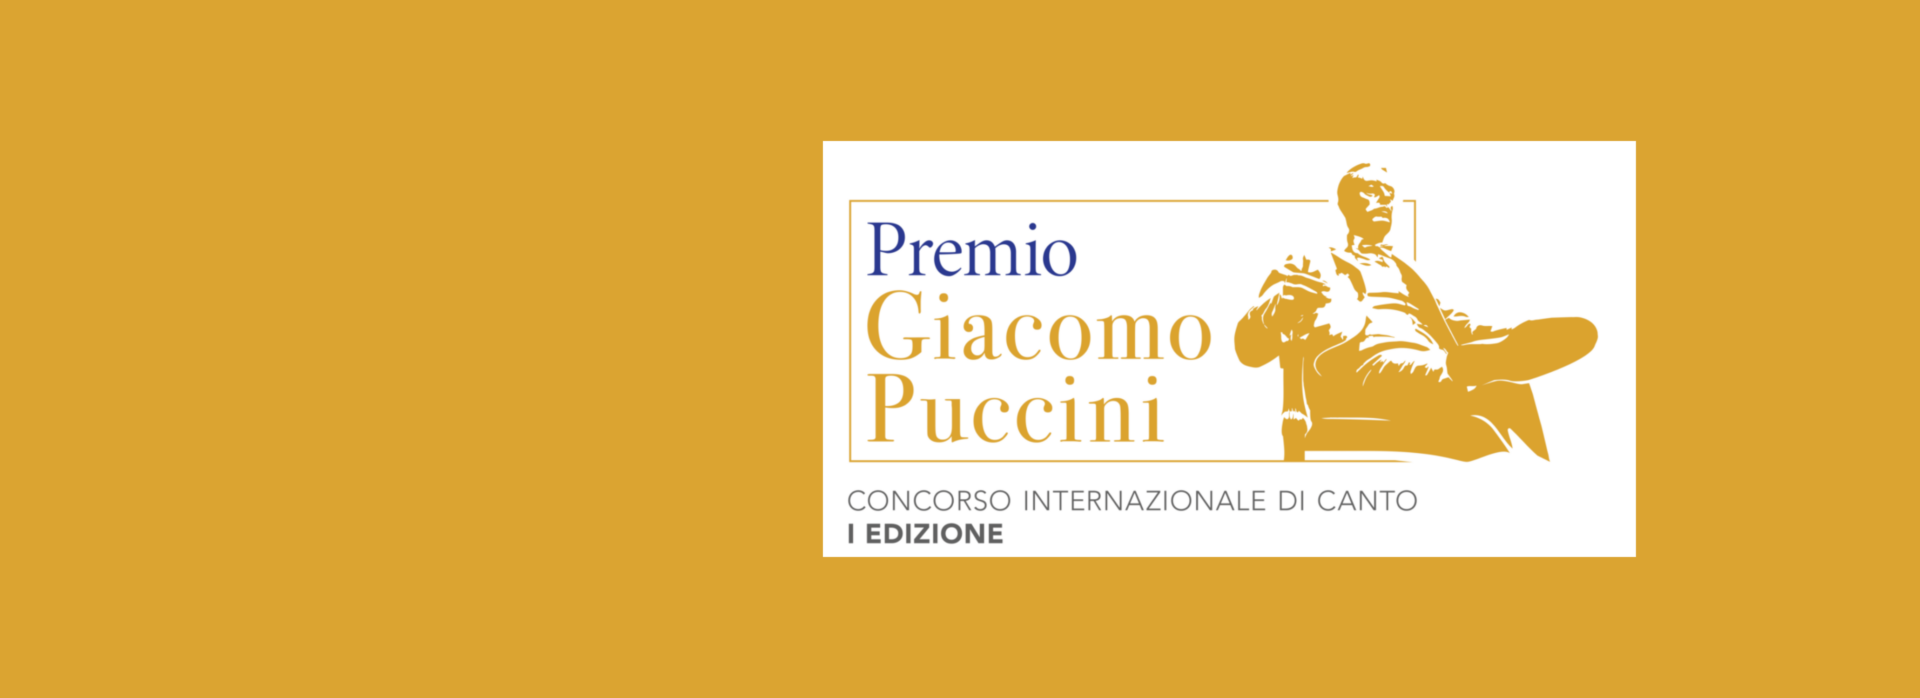 immagine progetto 'Concorso Internazionale di Canto Premio Giacomo Puccini'